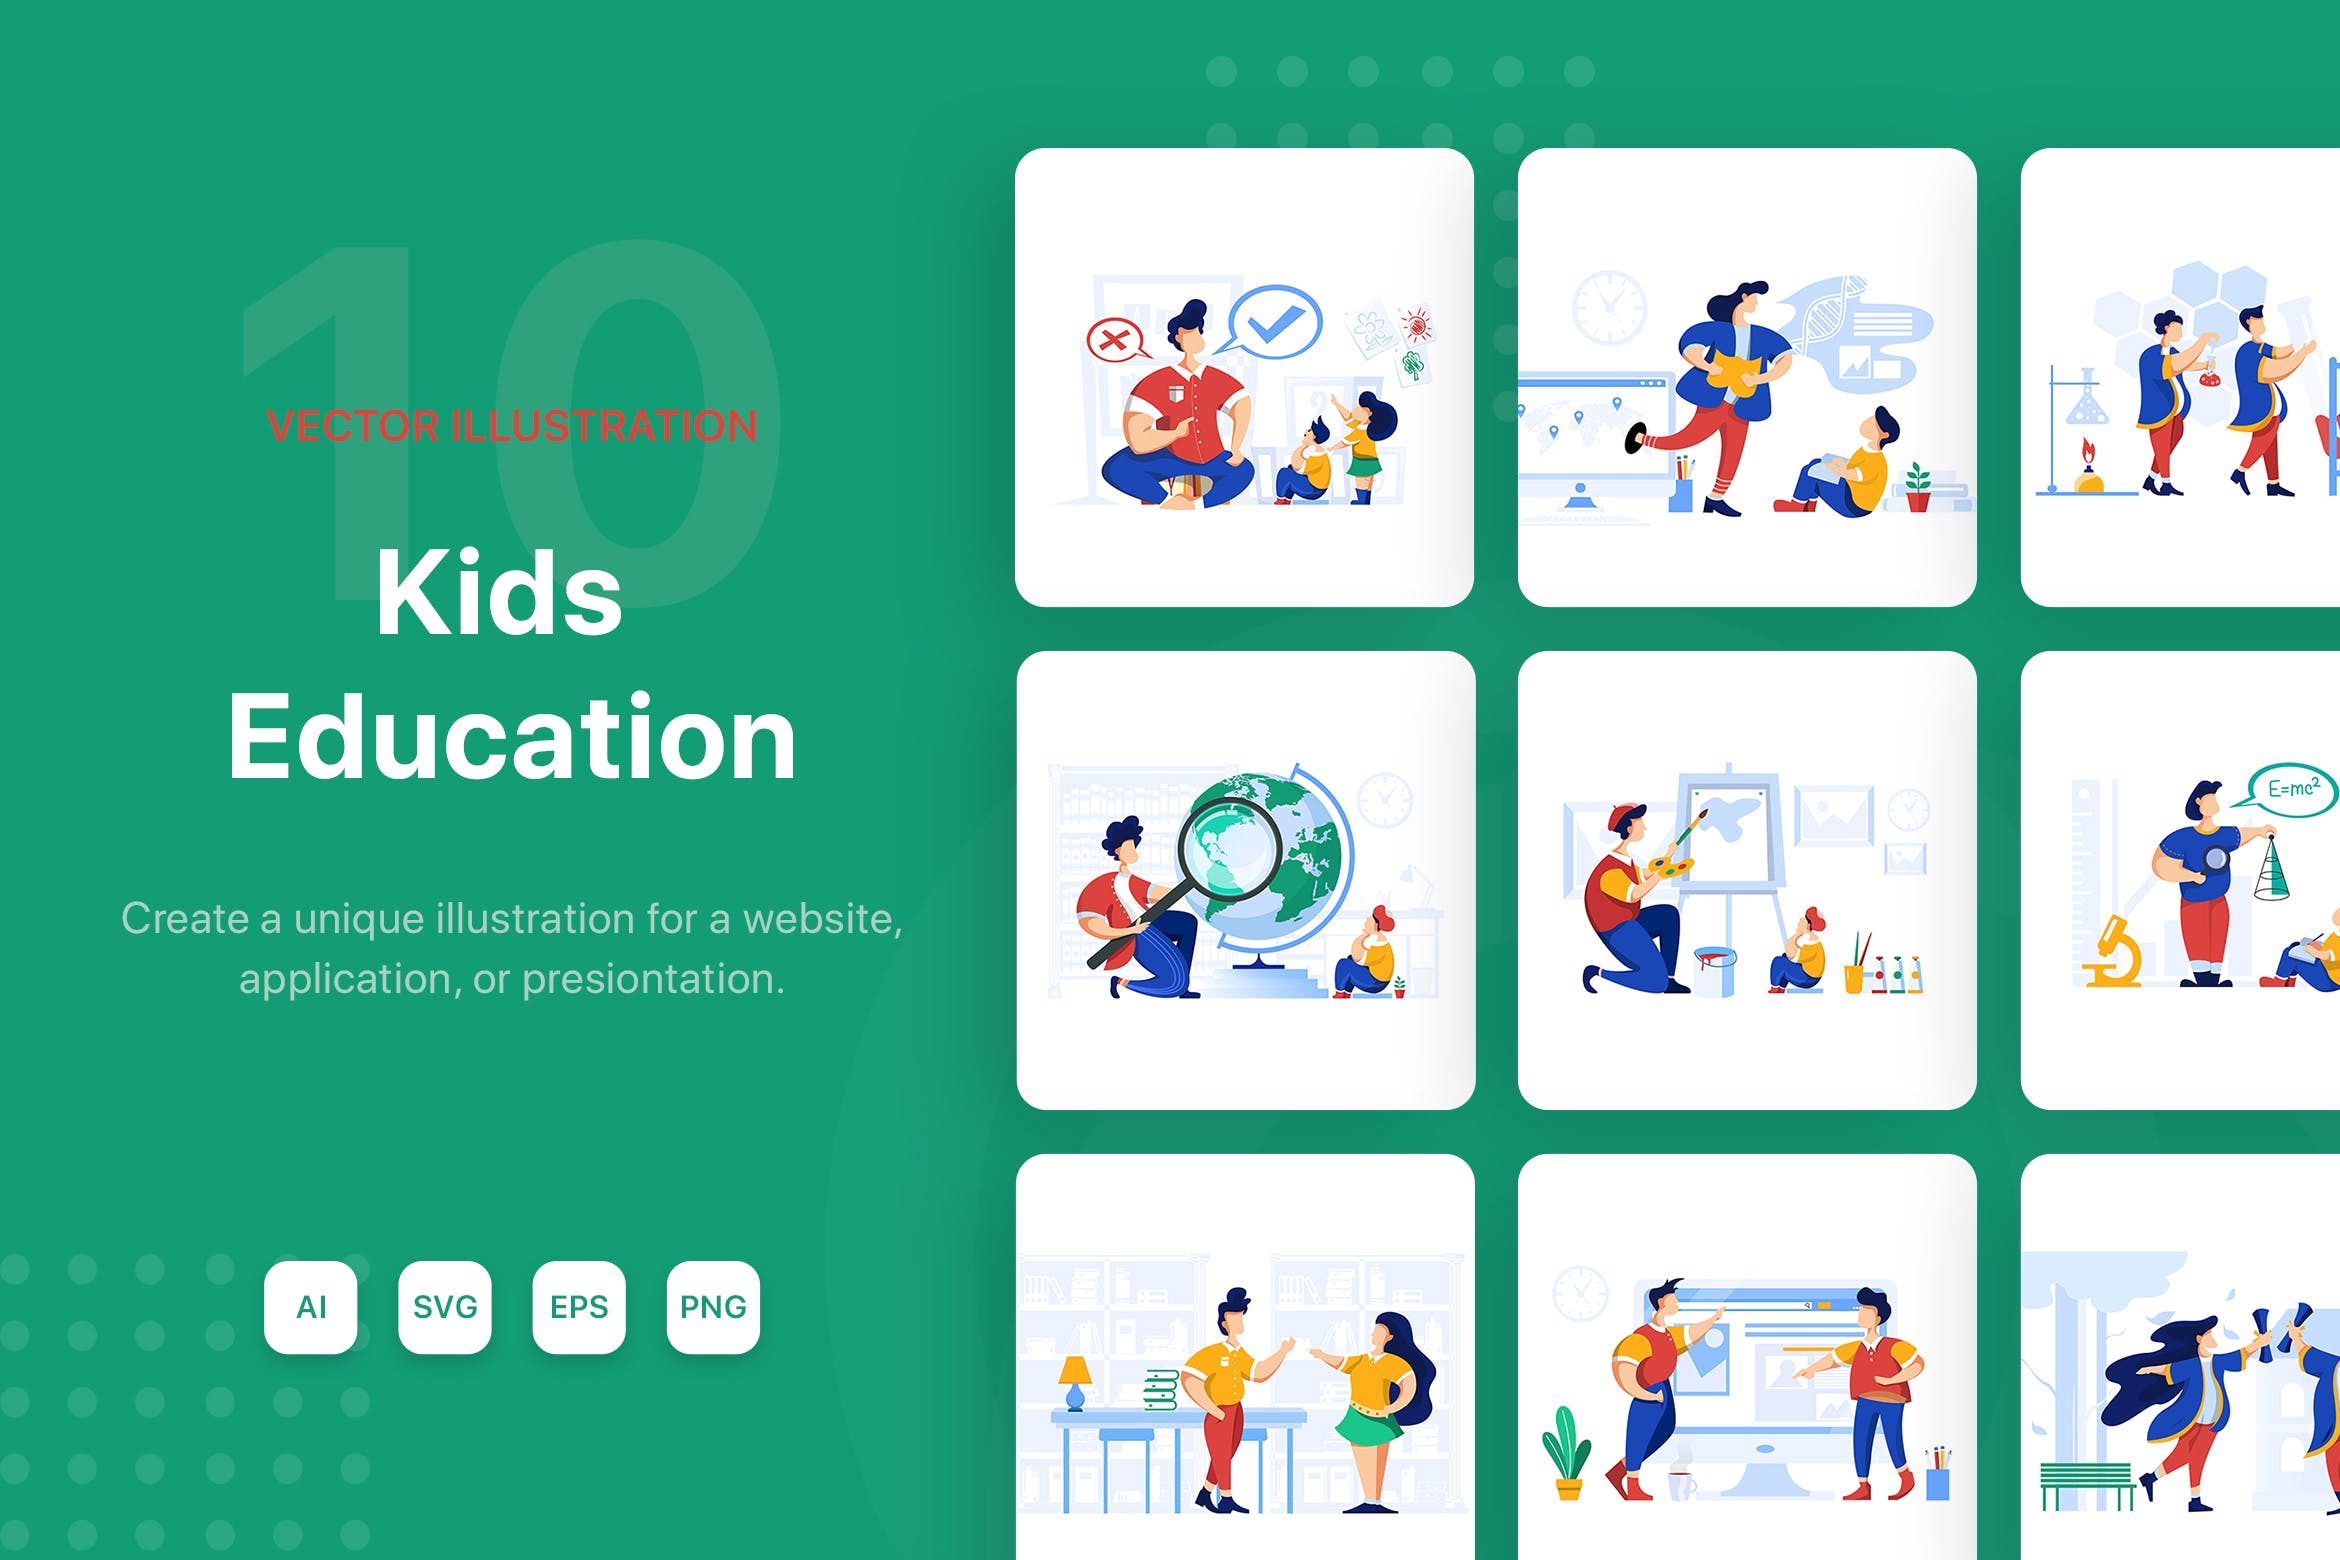 儿童教育主题矢量插画设计素材包 Kids Education Illustration Pack插图